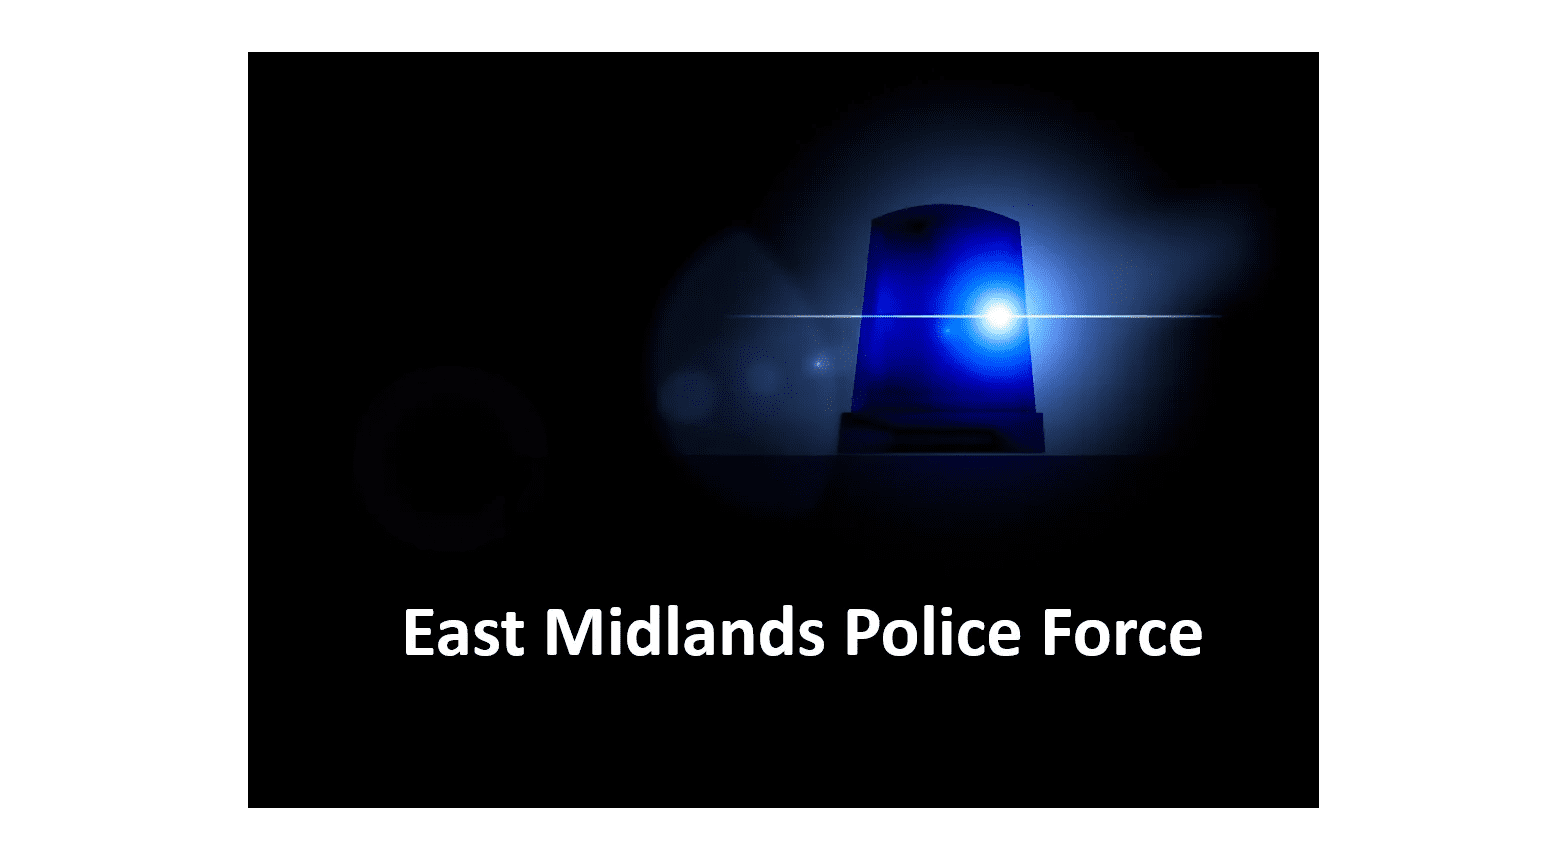 East midlands police force